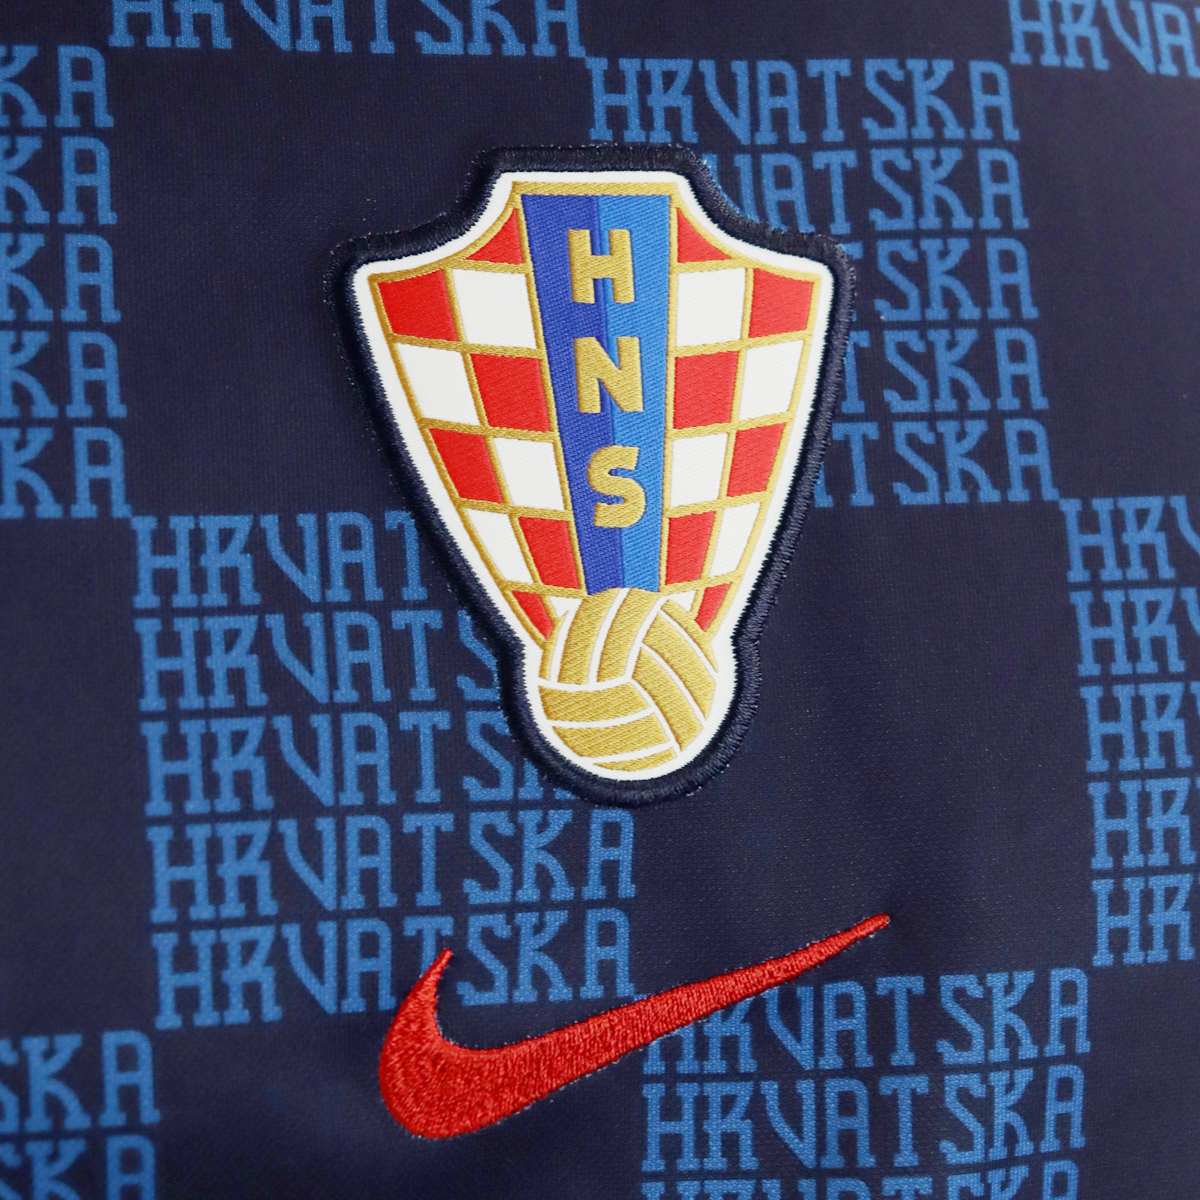 Nike Kroatien Dri-Fit PreMatch Trikot T-Shirt DM9546-498-